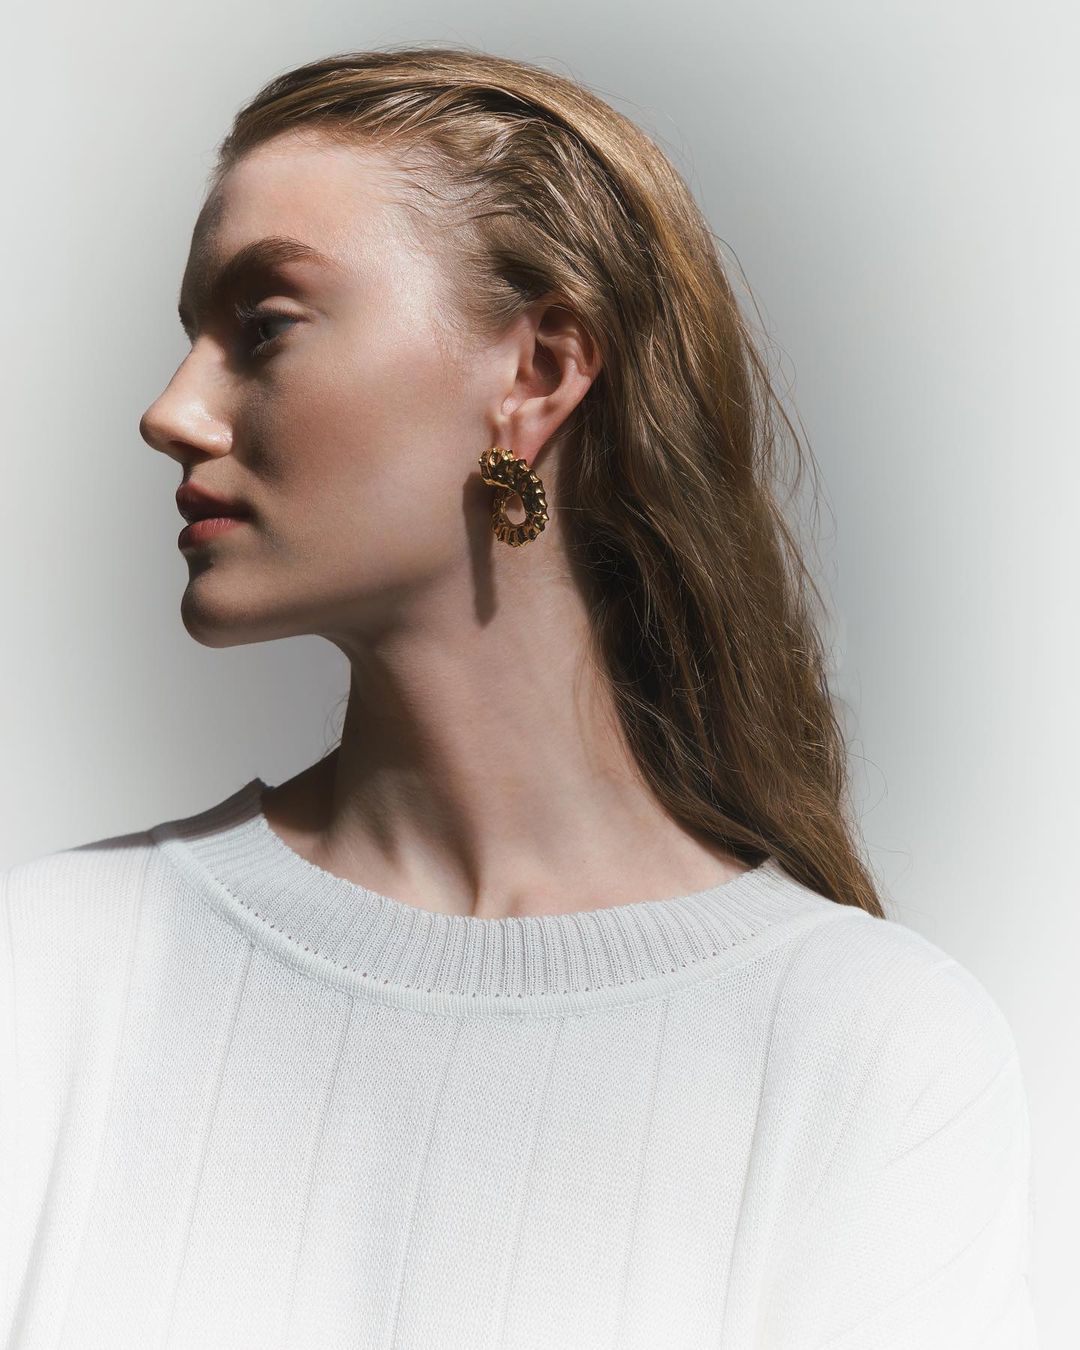 Horn earrings